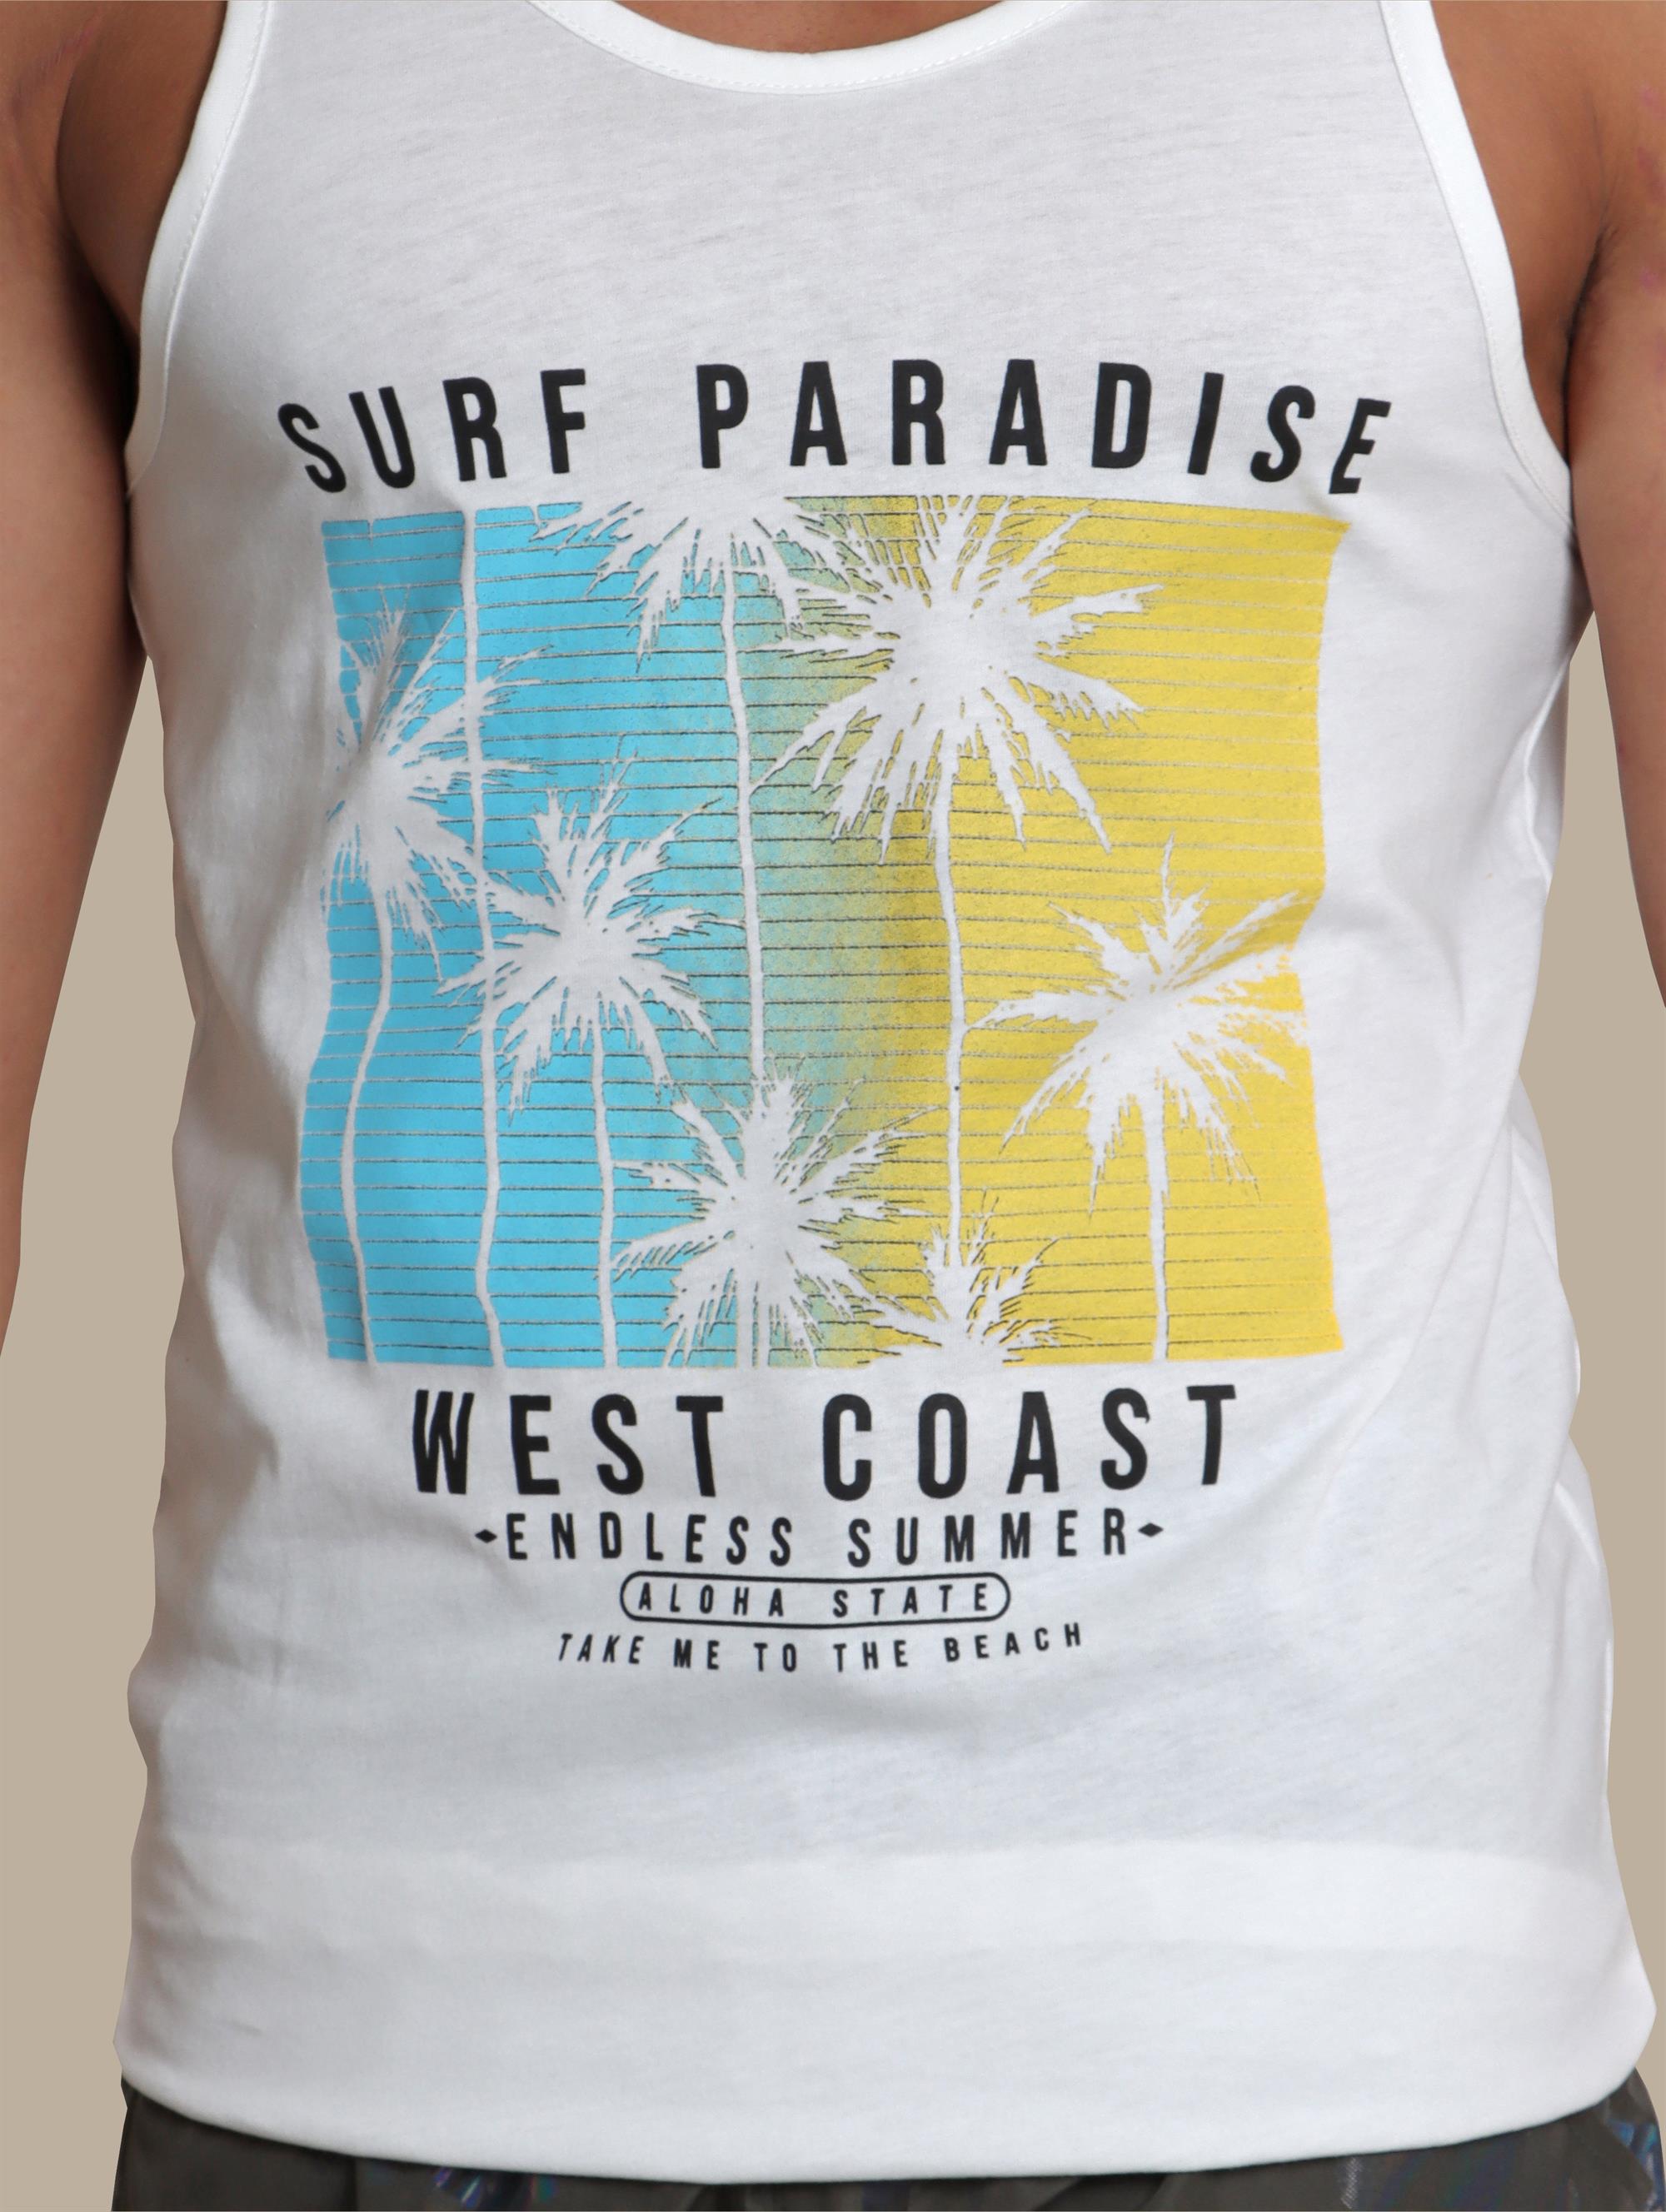 I-Shirt Surf Paradise | White